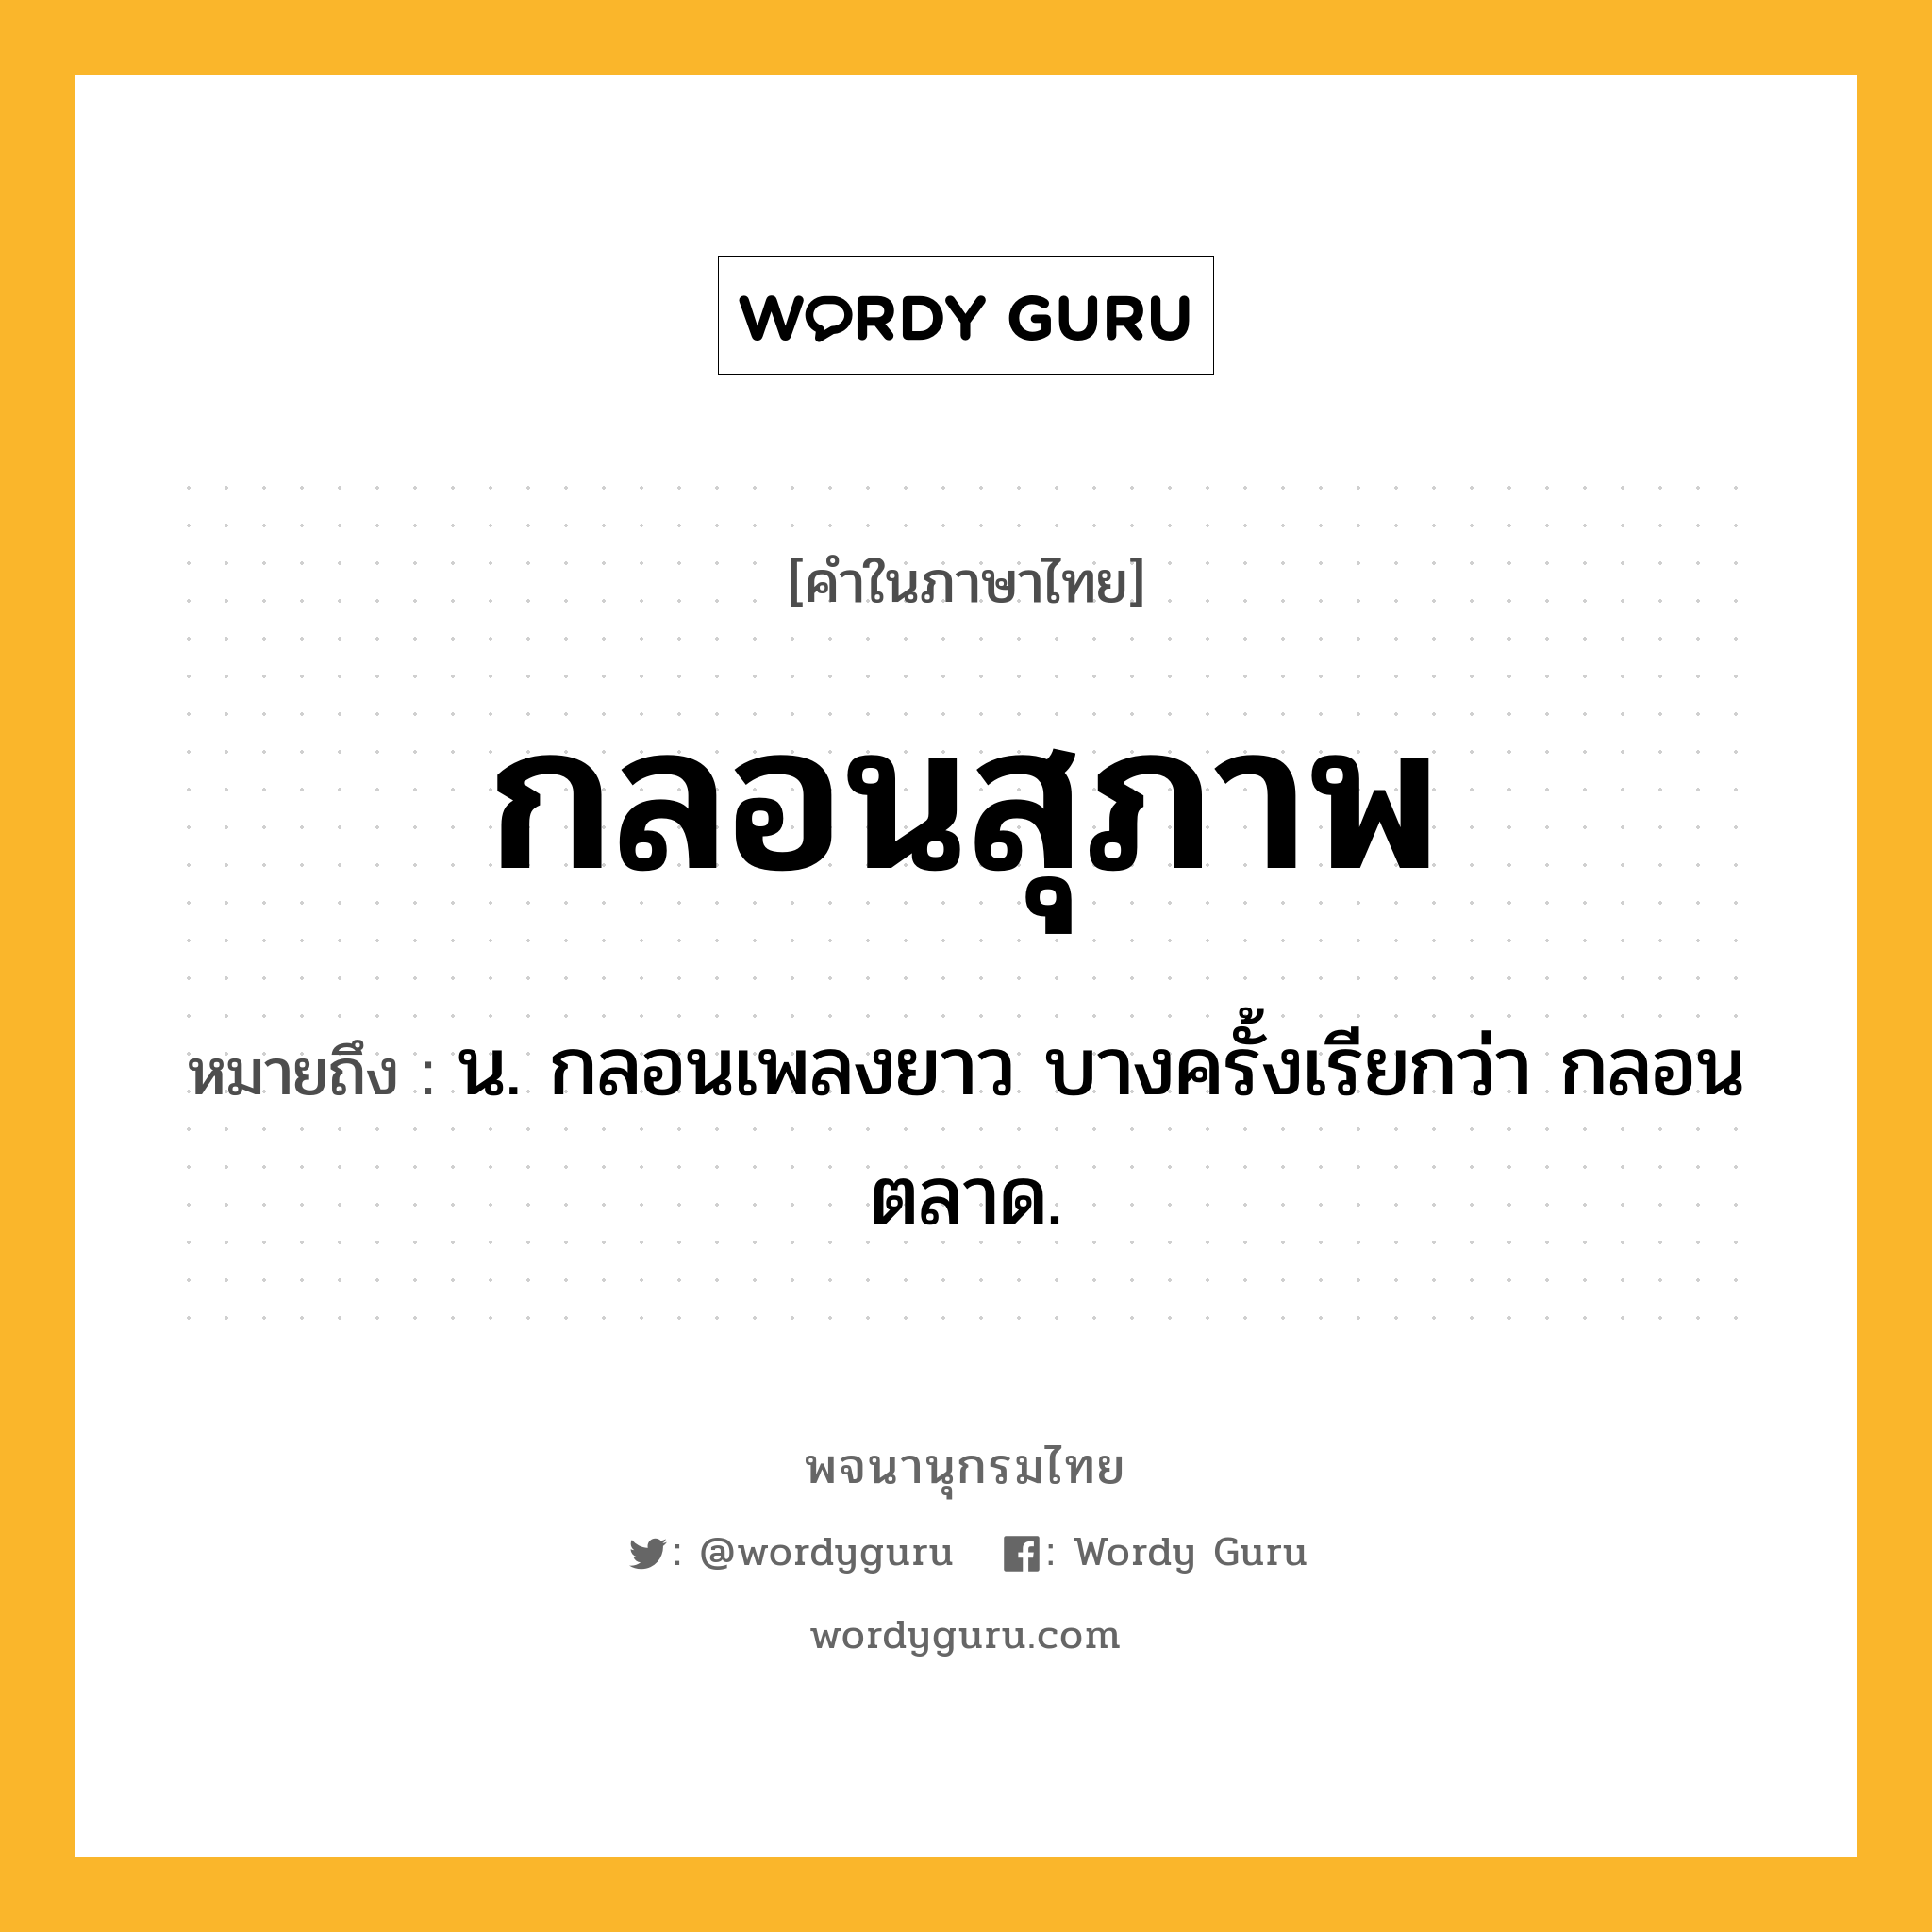 กลอนสุภาพ ความหมาย หมายถึงอะไร?, คำในภาษาไทย กลอนสุภาพ หมายถึง น. กลอนเพลงยาว บางครั้งเรียกว่า กลอนตลาด.